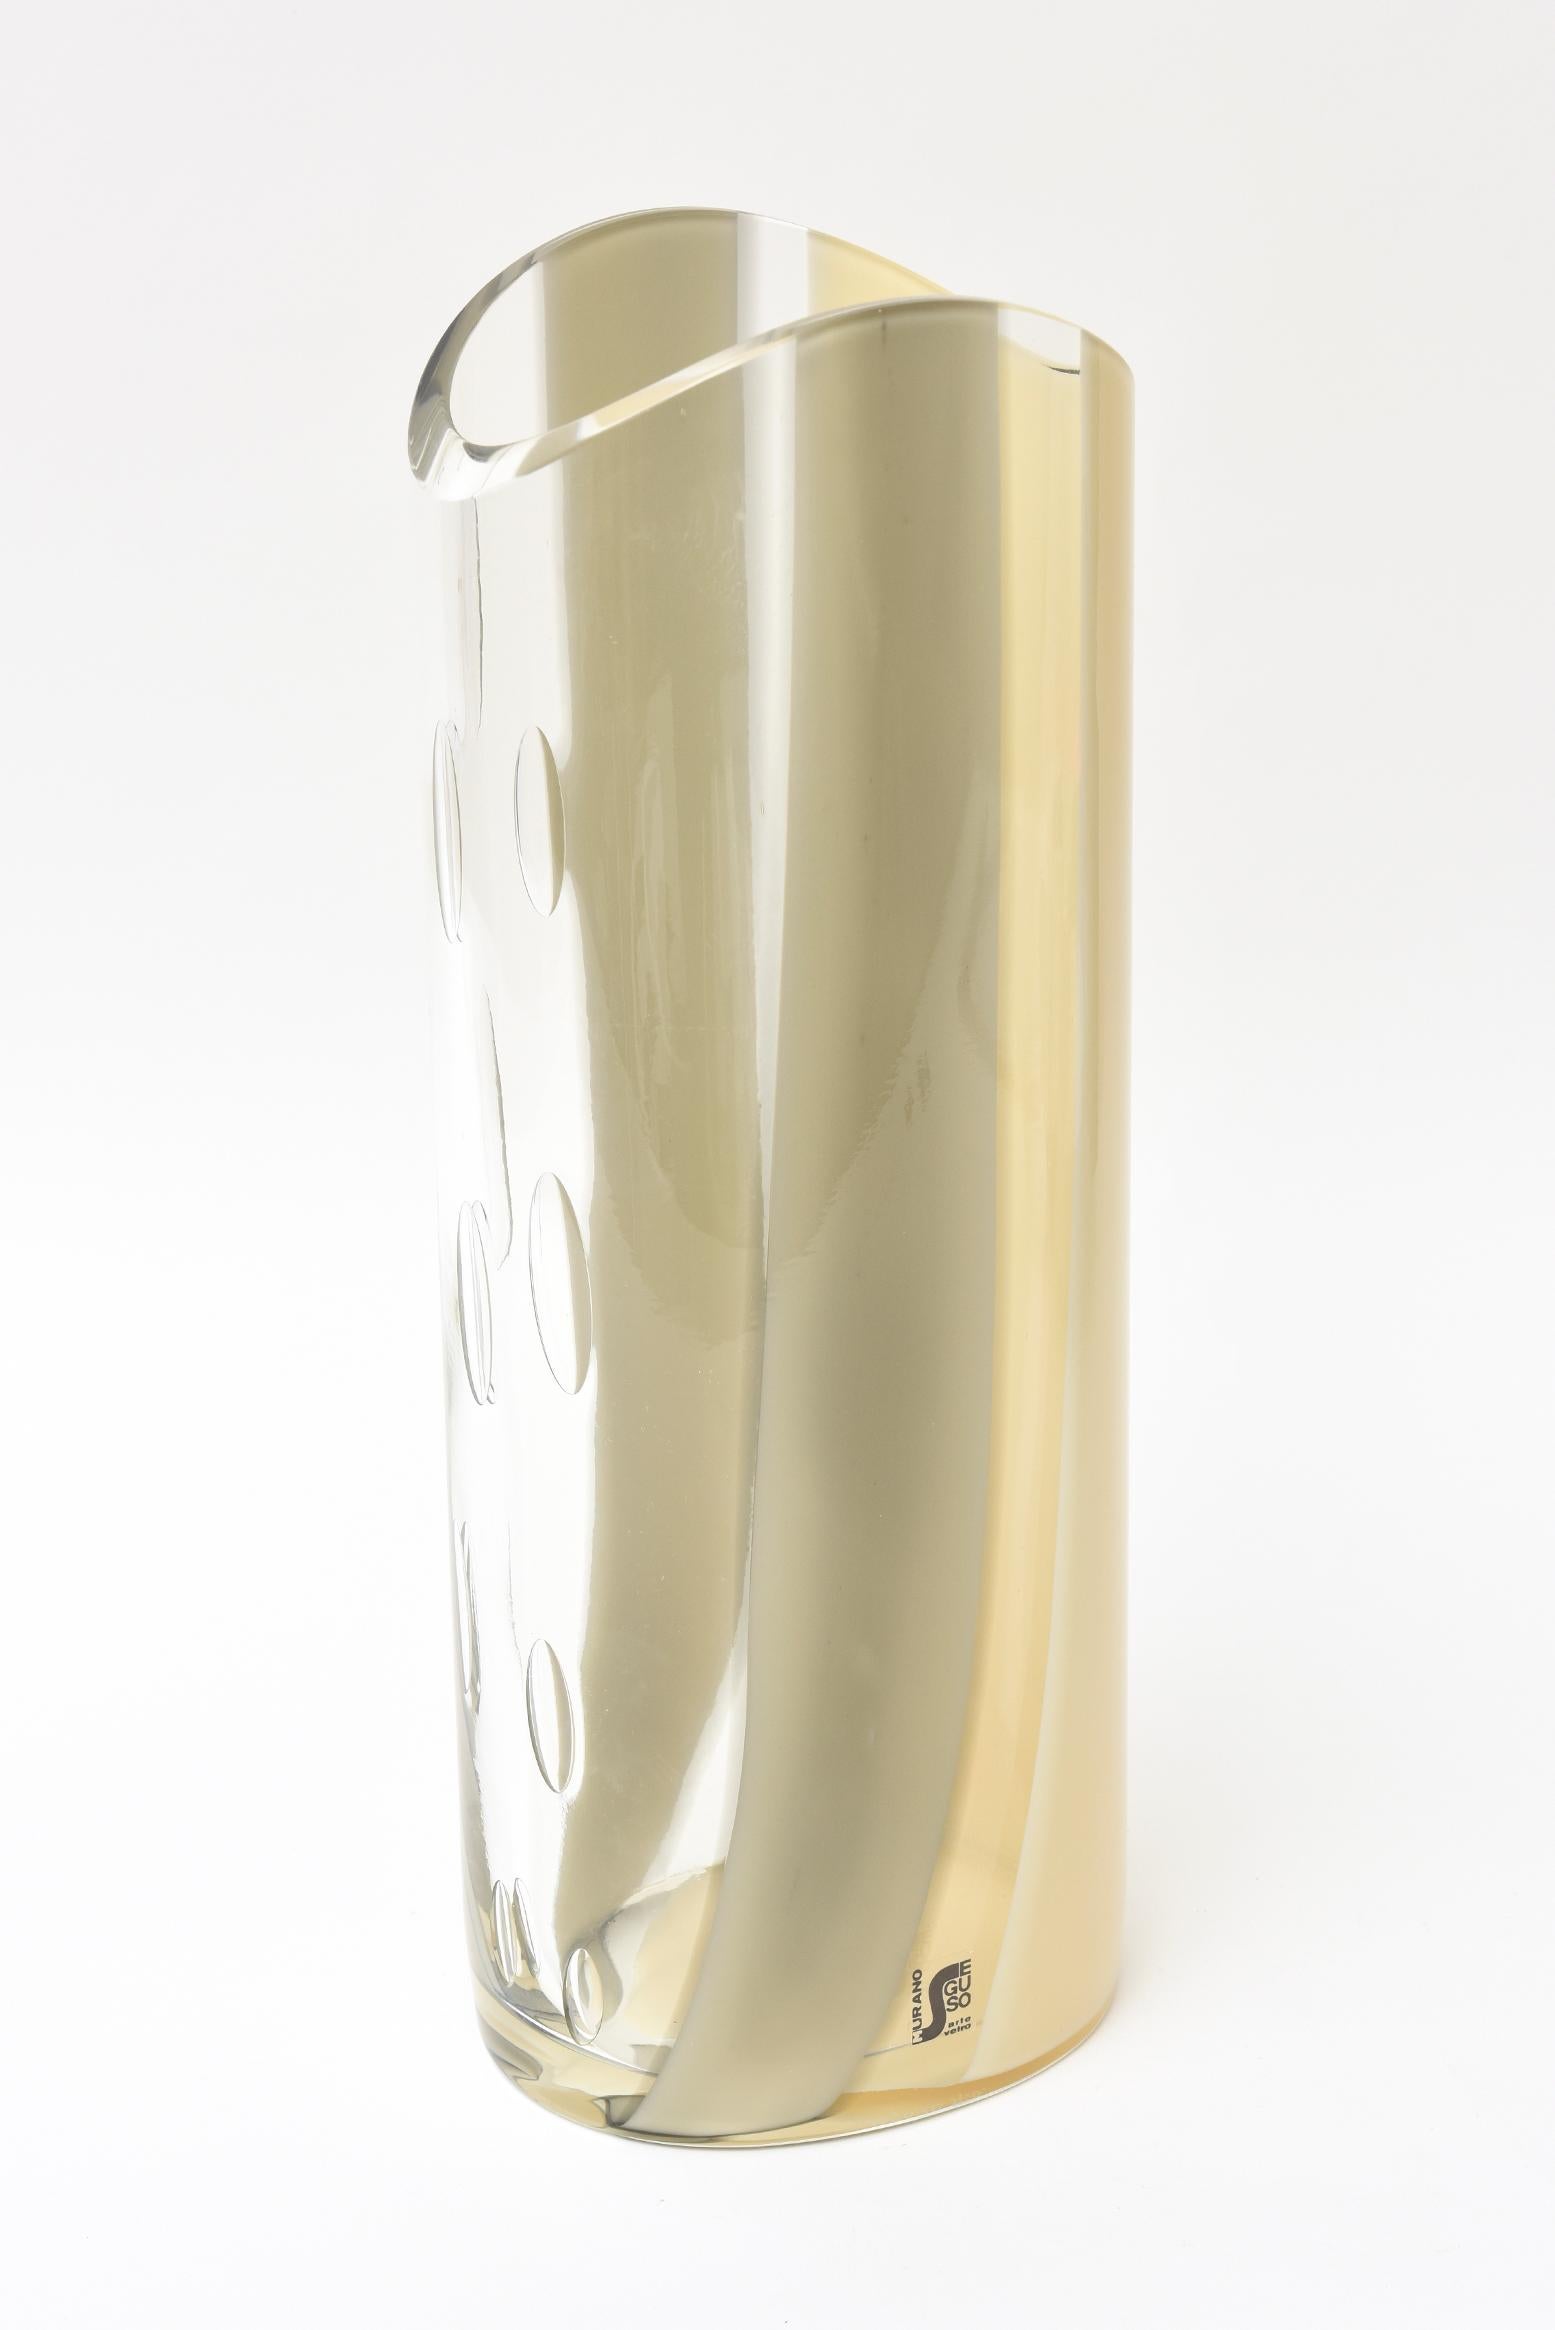 Diese italienische Vase aus Murano mit der Signatur Seguso stammt aus den 1980er Jahren. Die Palette von cremefarben bis hellbraun, die in graue, breite Streifen übergeht, geht in einen klaren Hintergrund über, auf dem 10 verschiedene tropfenförmige